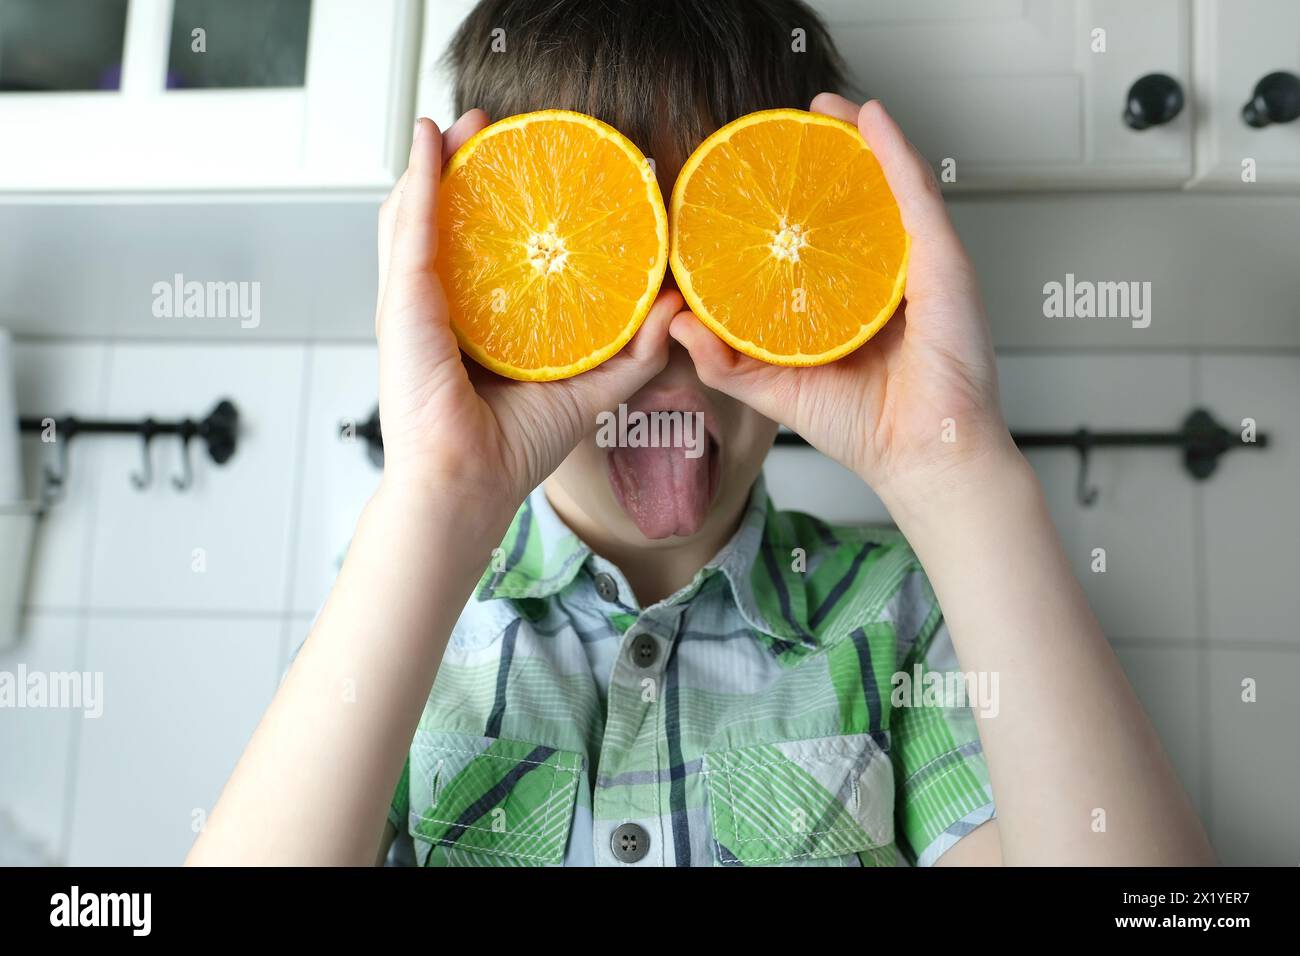 enfant, enfant 8-10, garçon assis dans la cuisine à la maison, oranges jaunes juteuses au lieu des yeux, gros plan de la tête, concept de régime alimentaire pour enfants, nourriture saine Banque D'Images